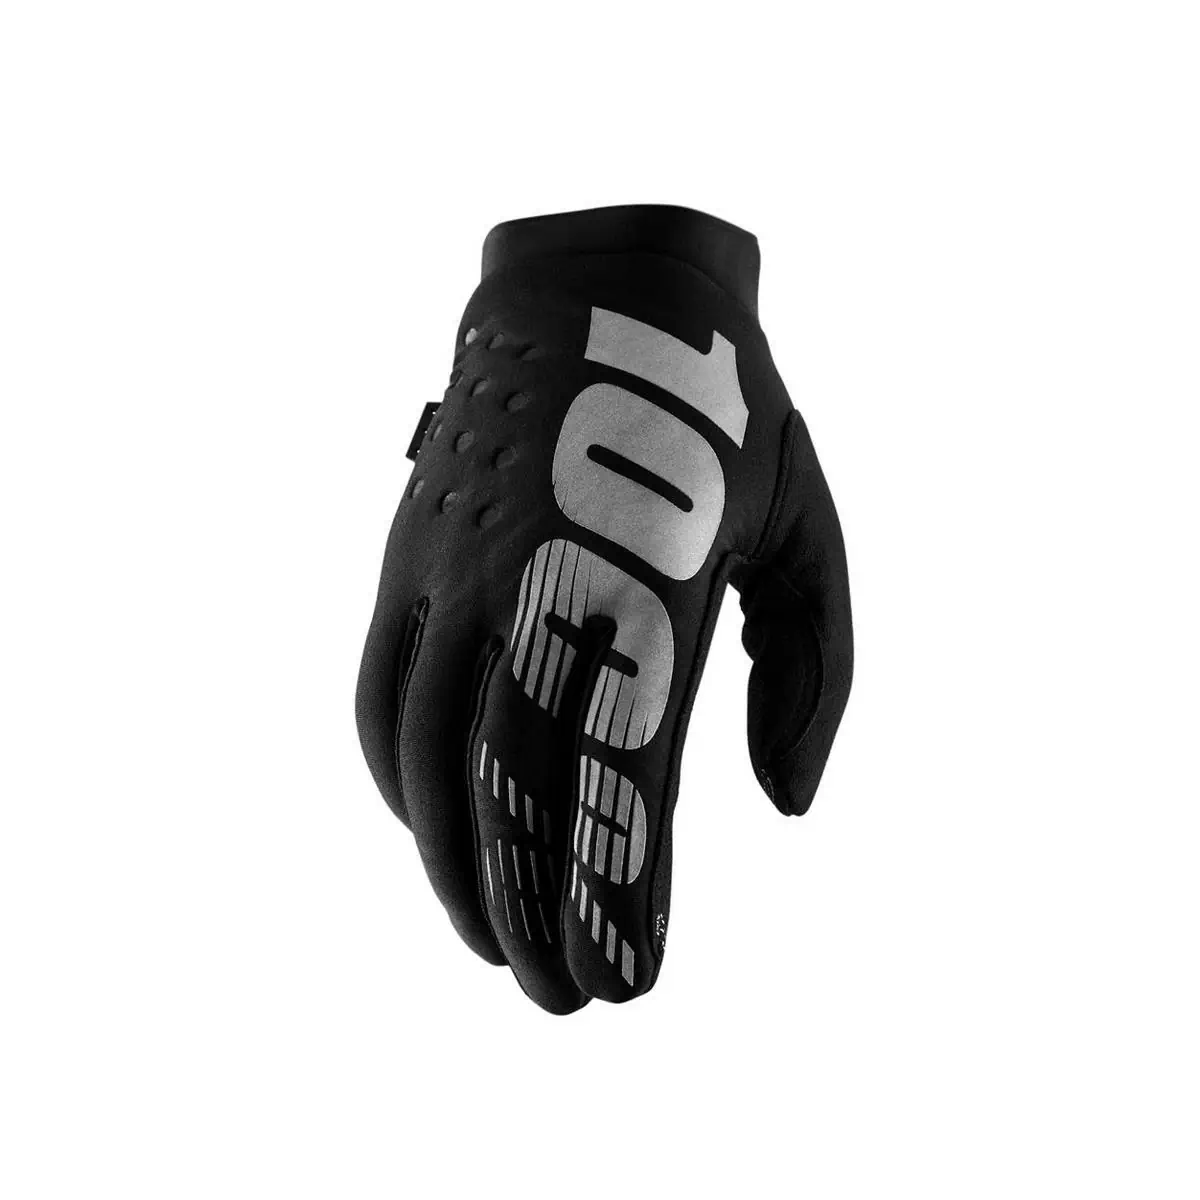 Winter gloves brisker black size S - image